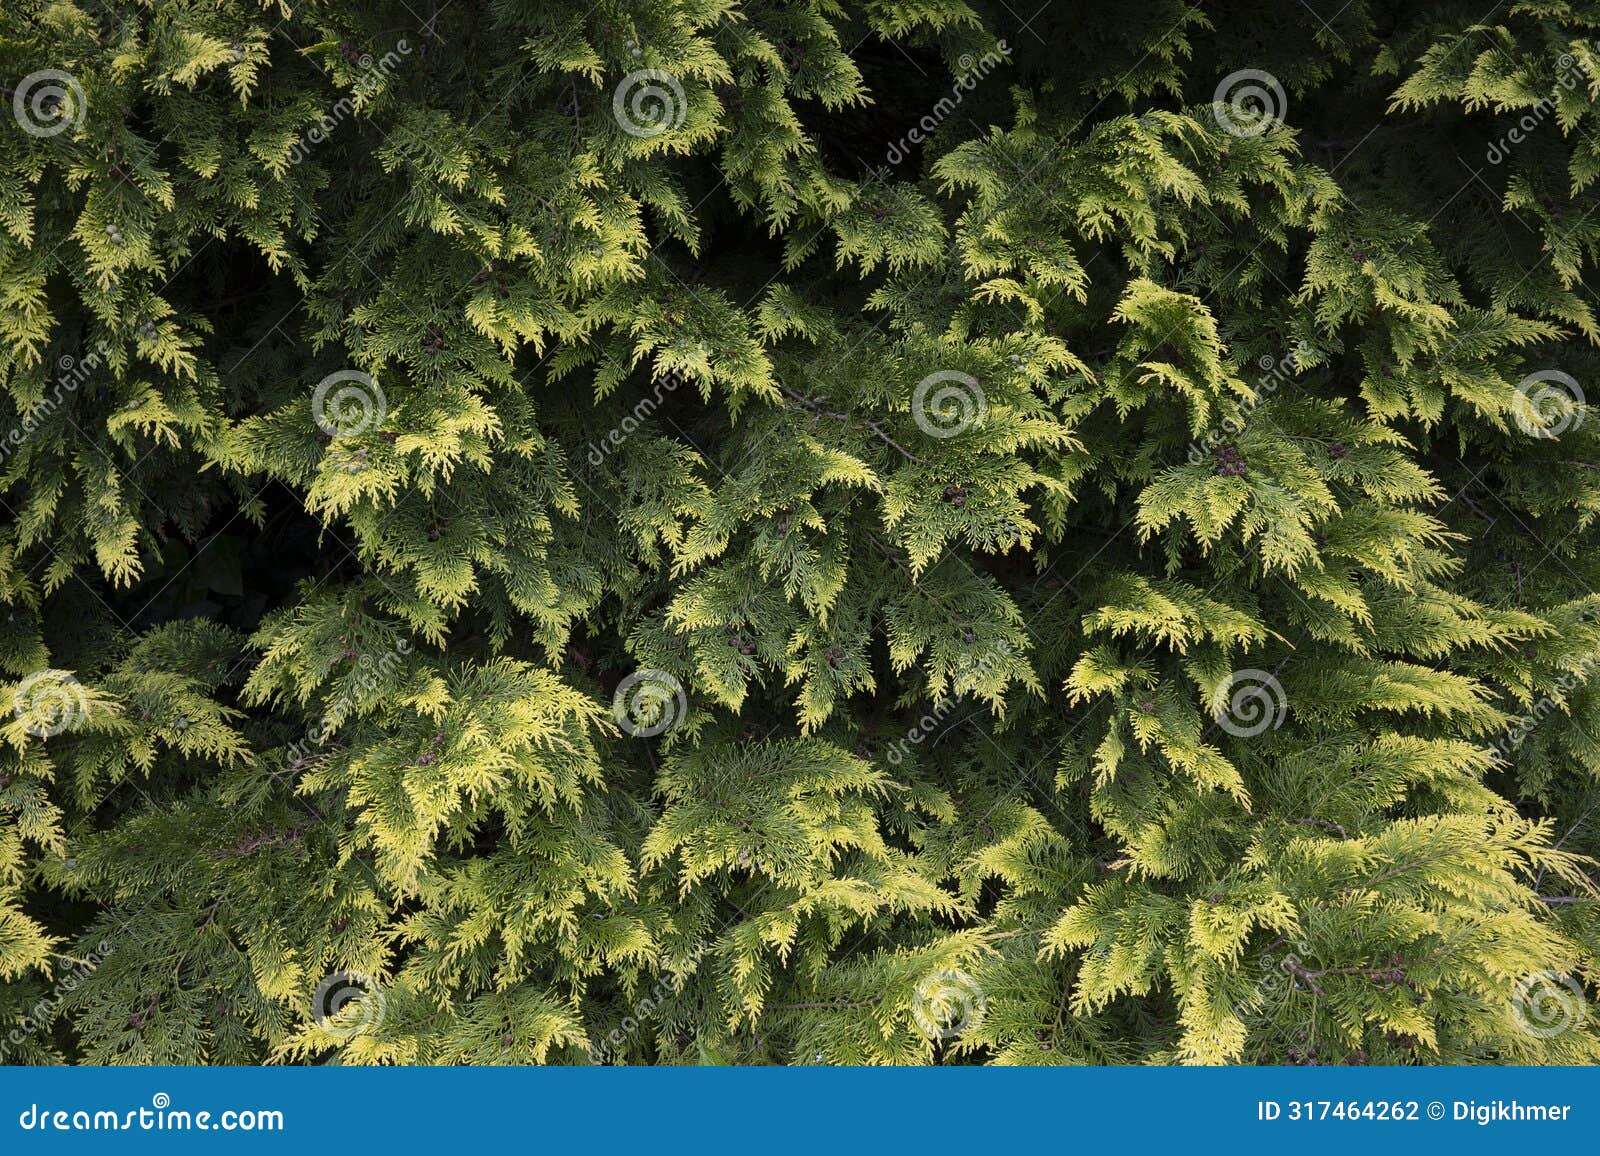 chamaecyparis obtusa 'crippsii', golden hinoke cypress